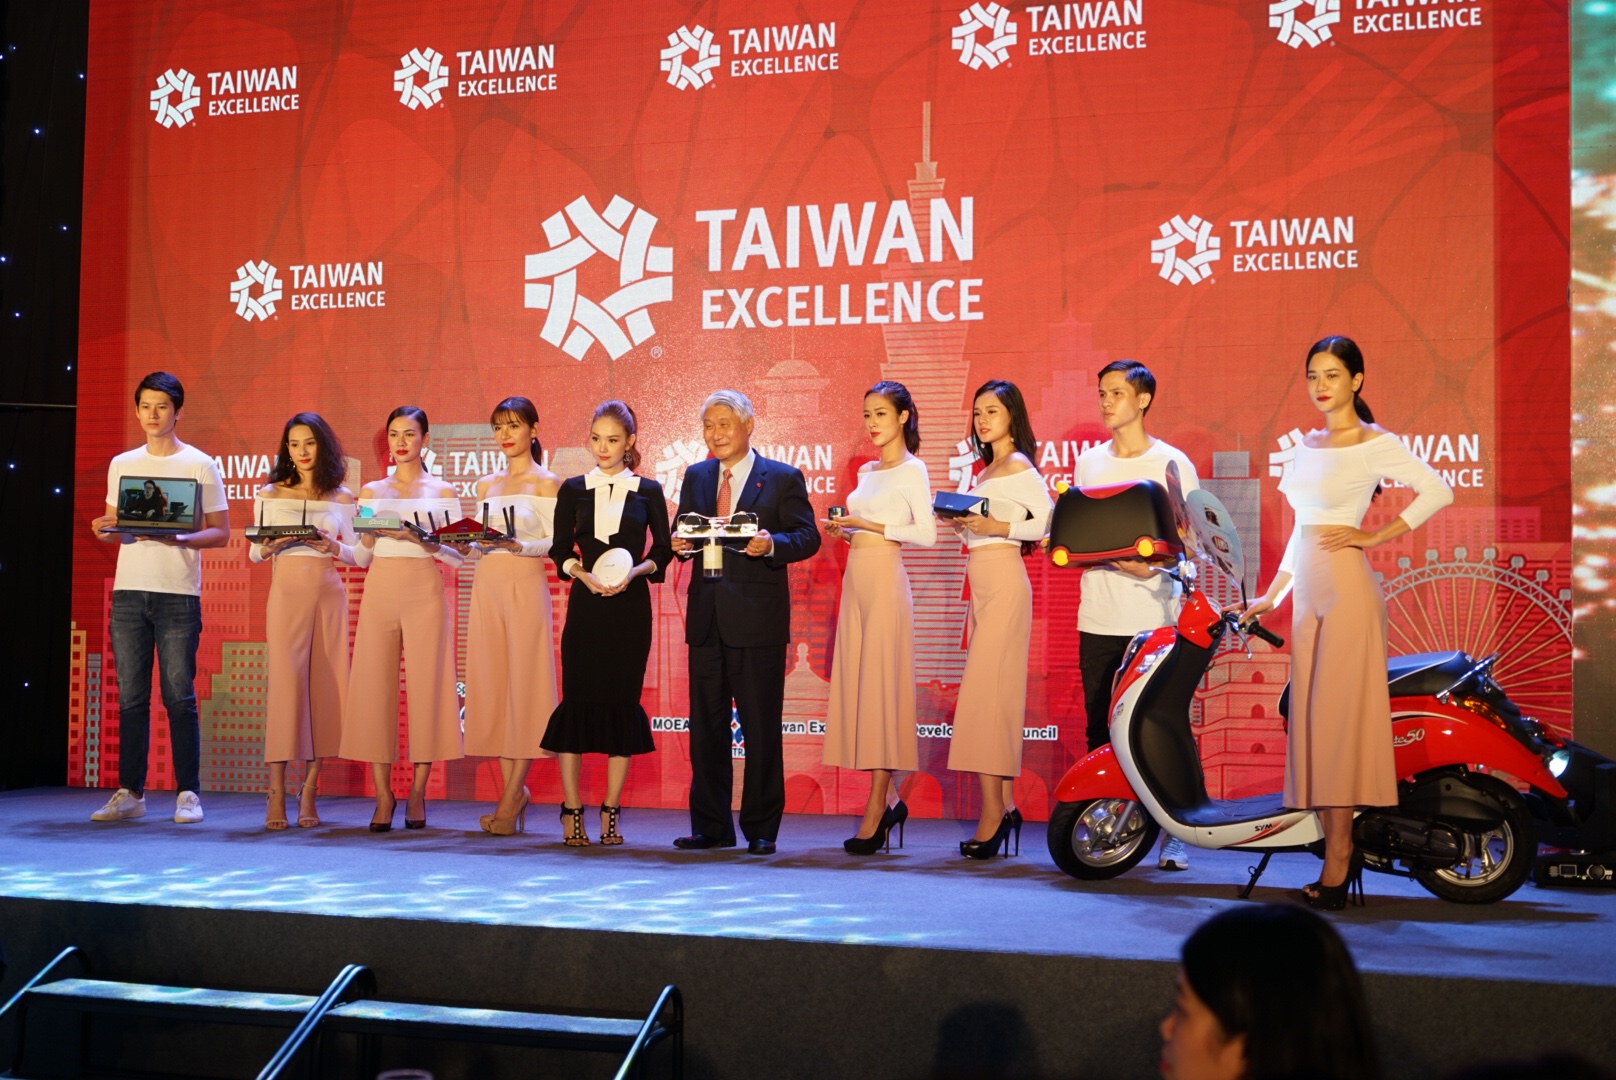 Họp báo khởi động chiến dịch Taiwan Excellence tại Việt Nam